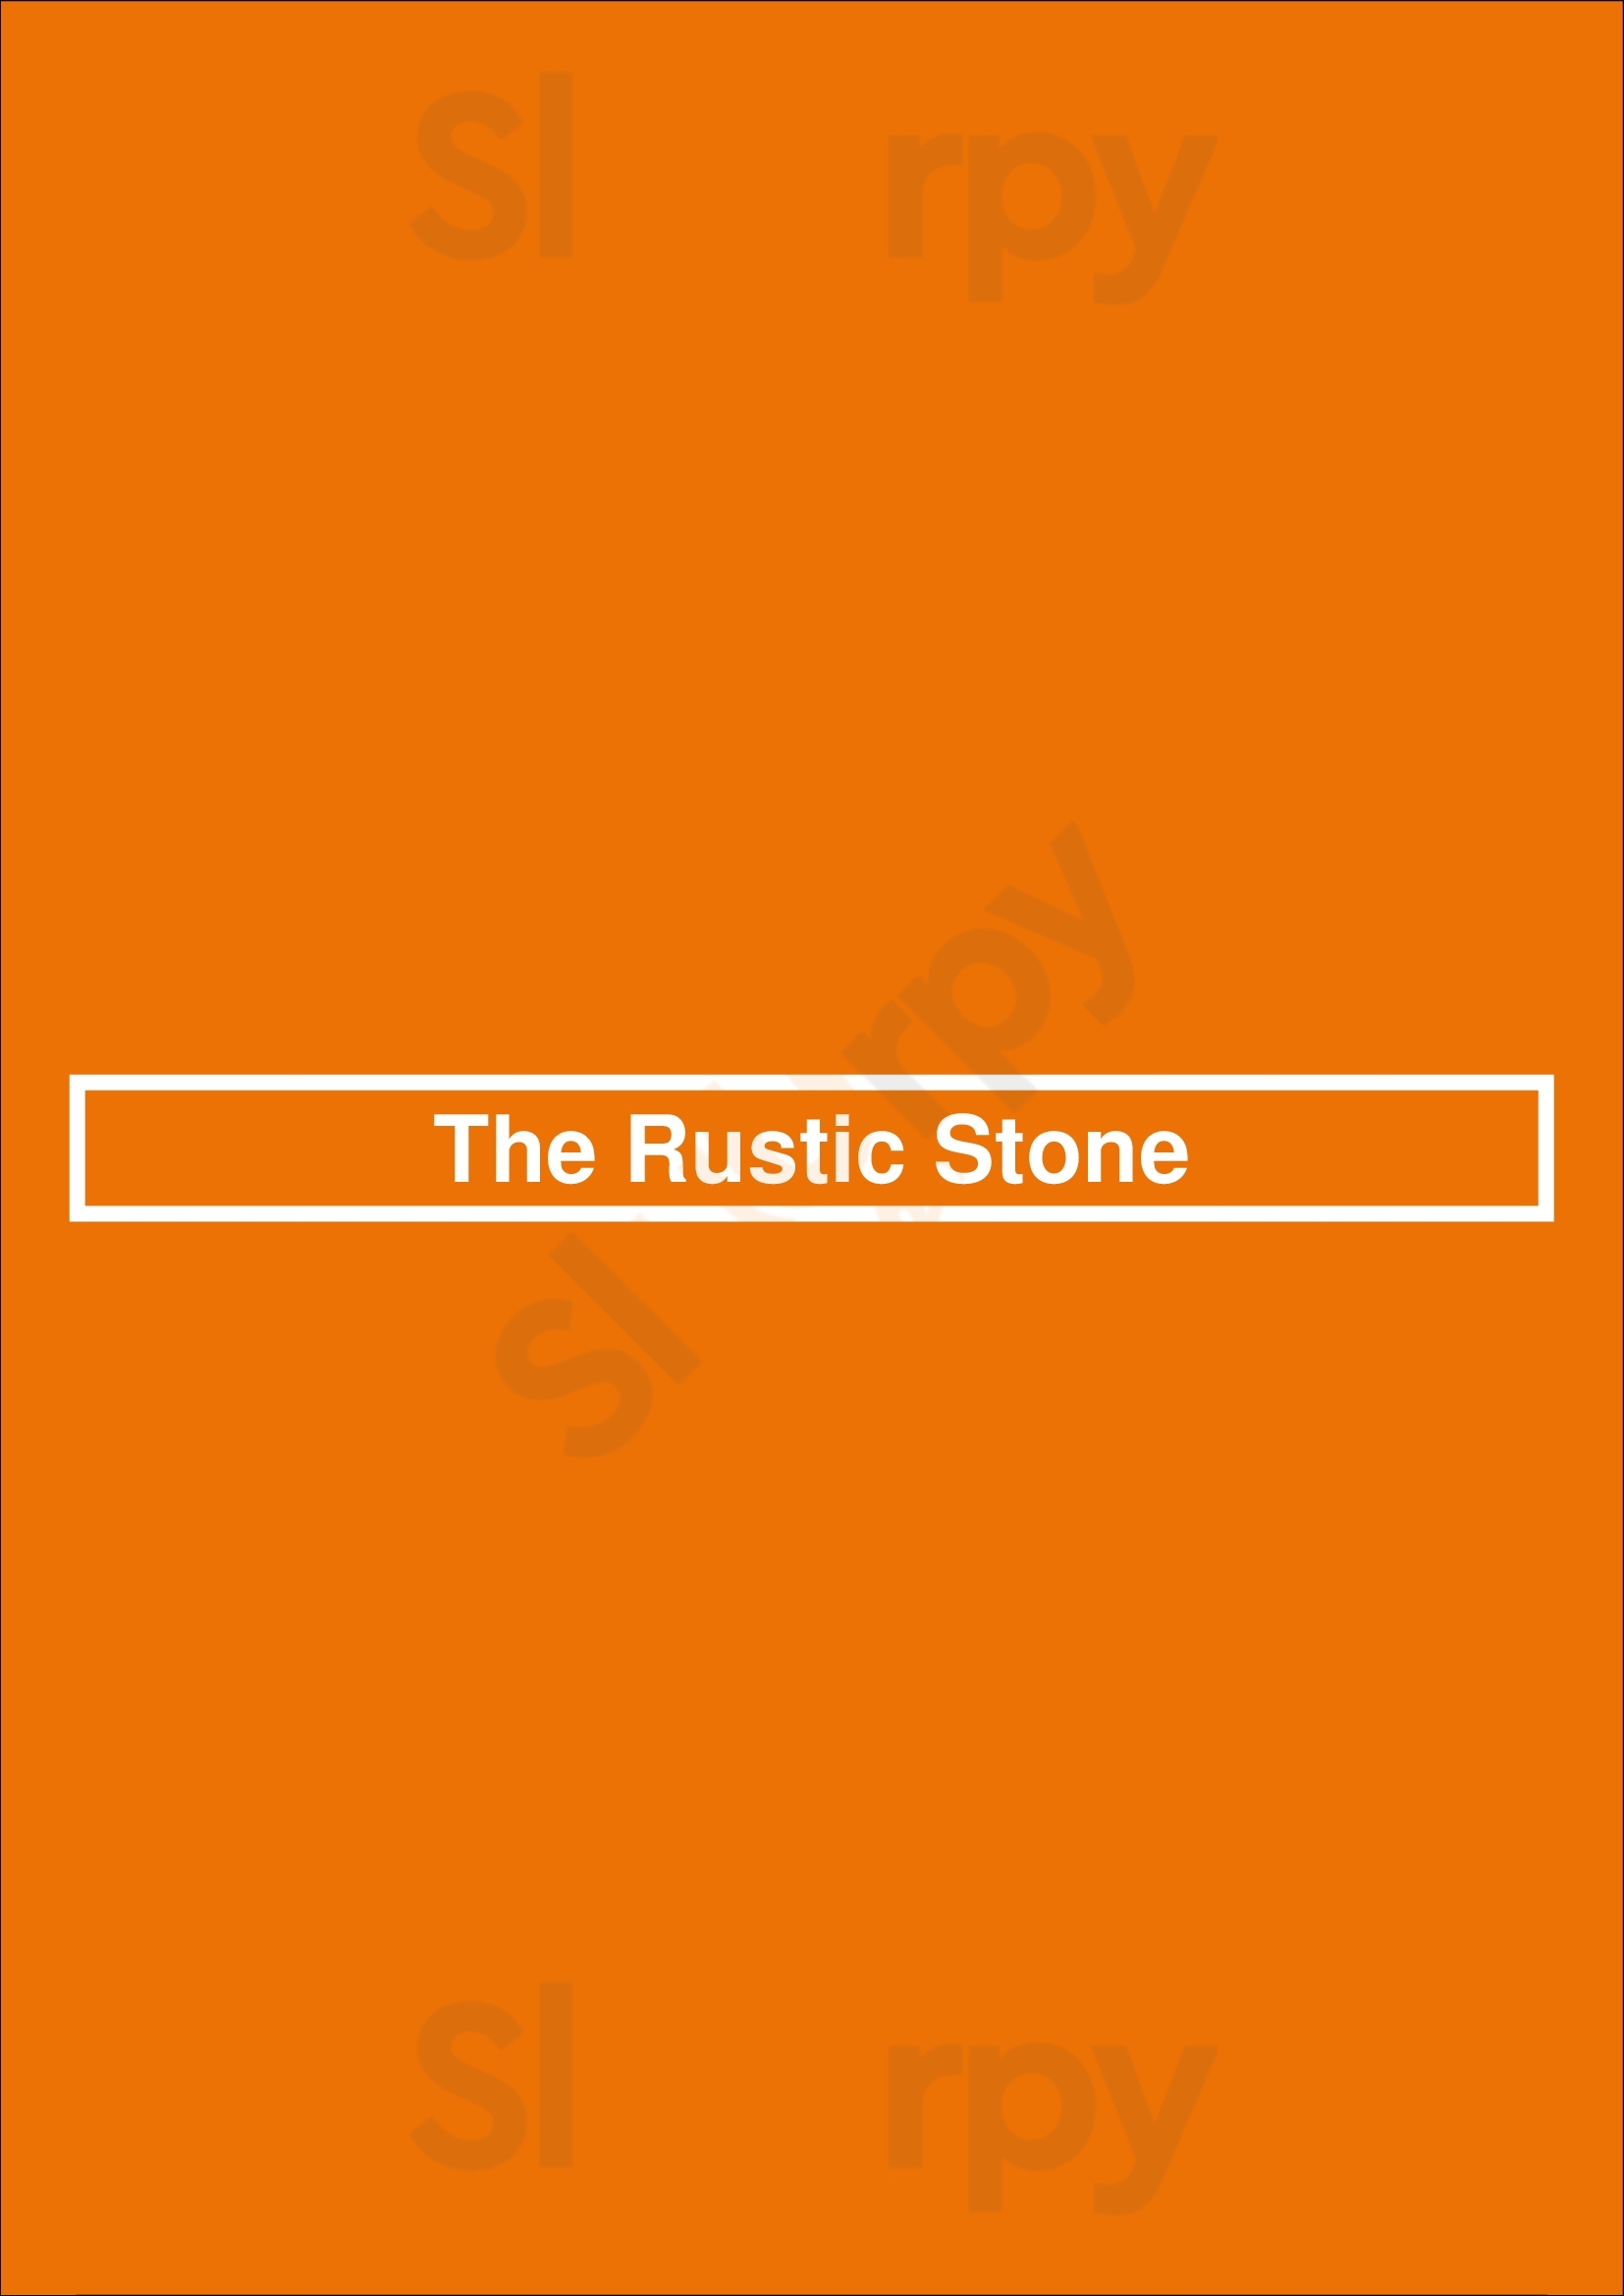 The Rustic Stone Dublin Menu - 1